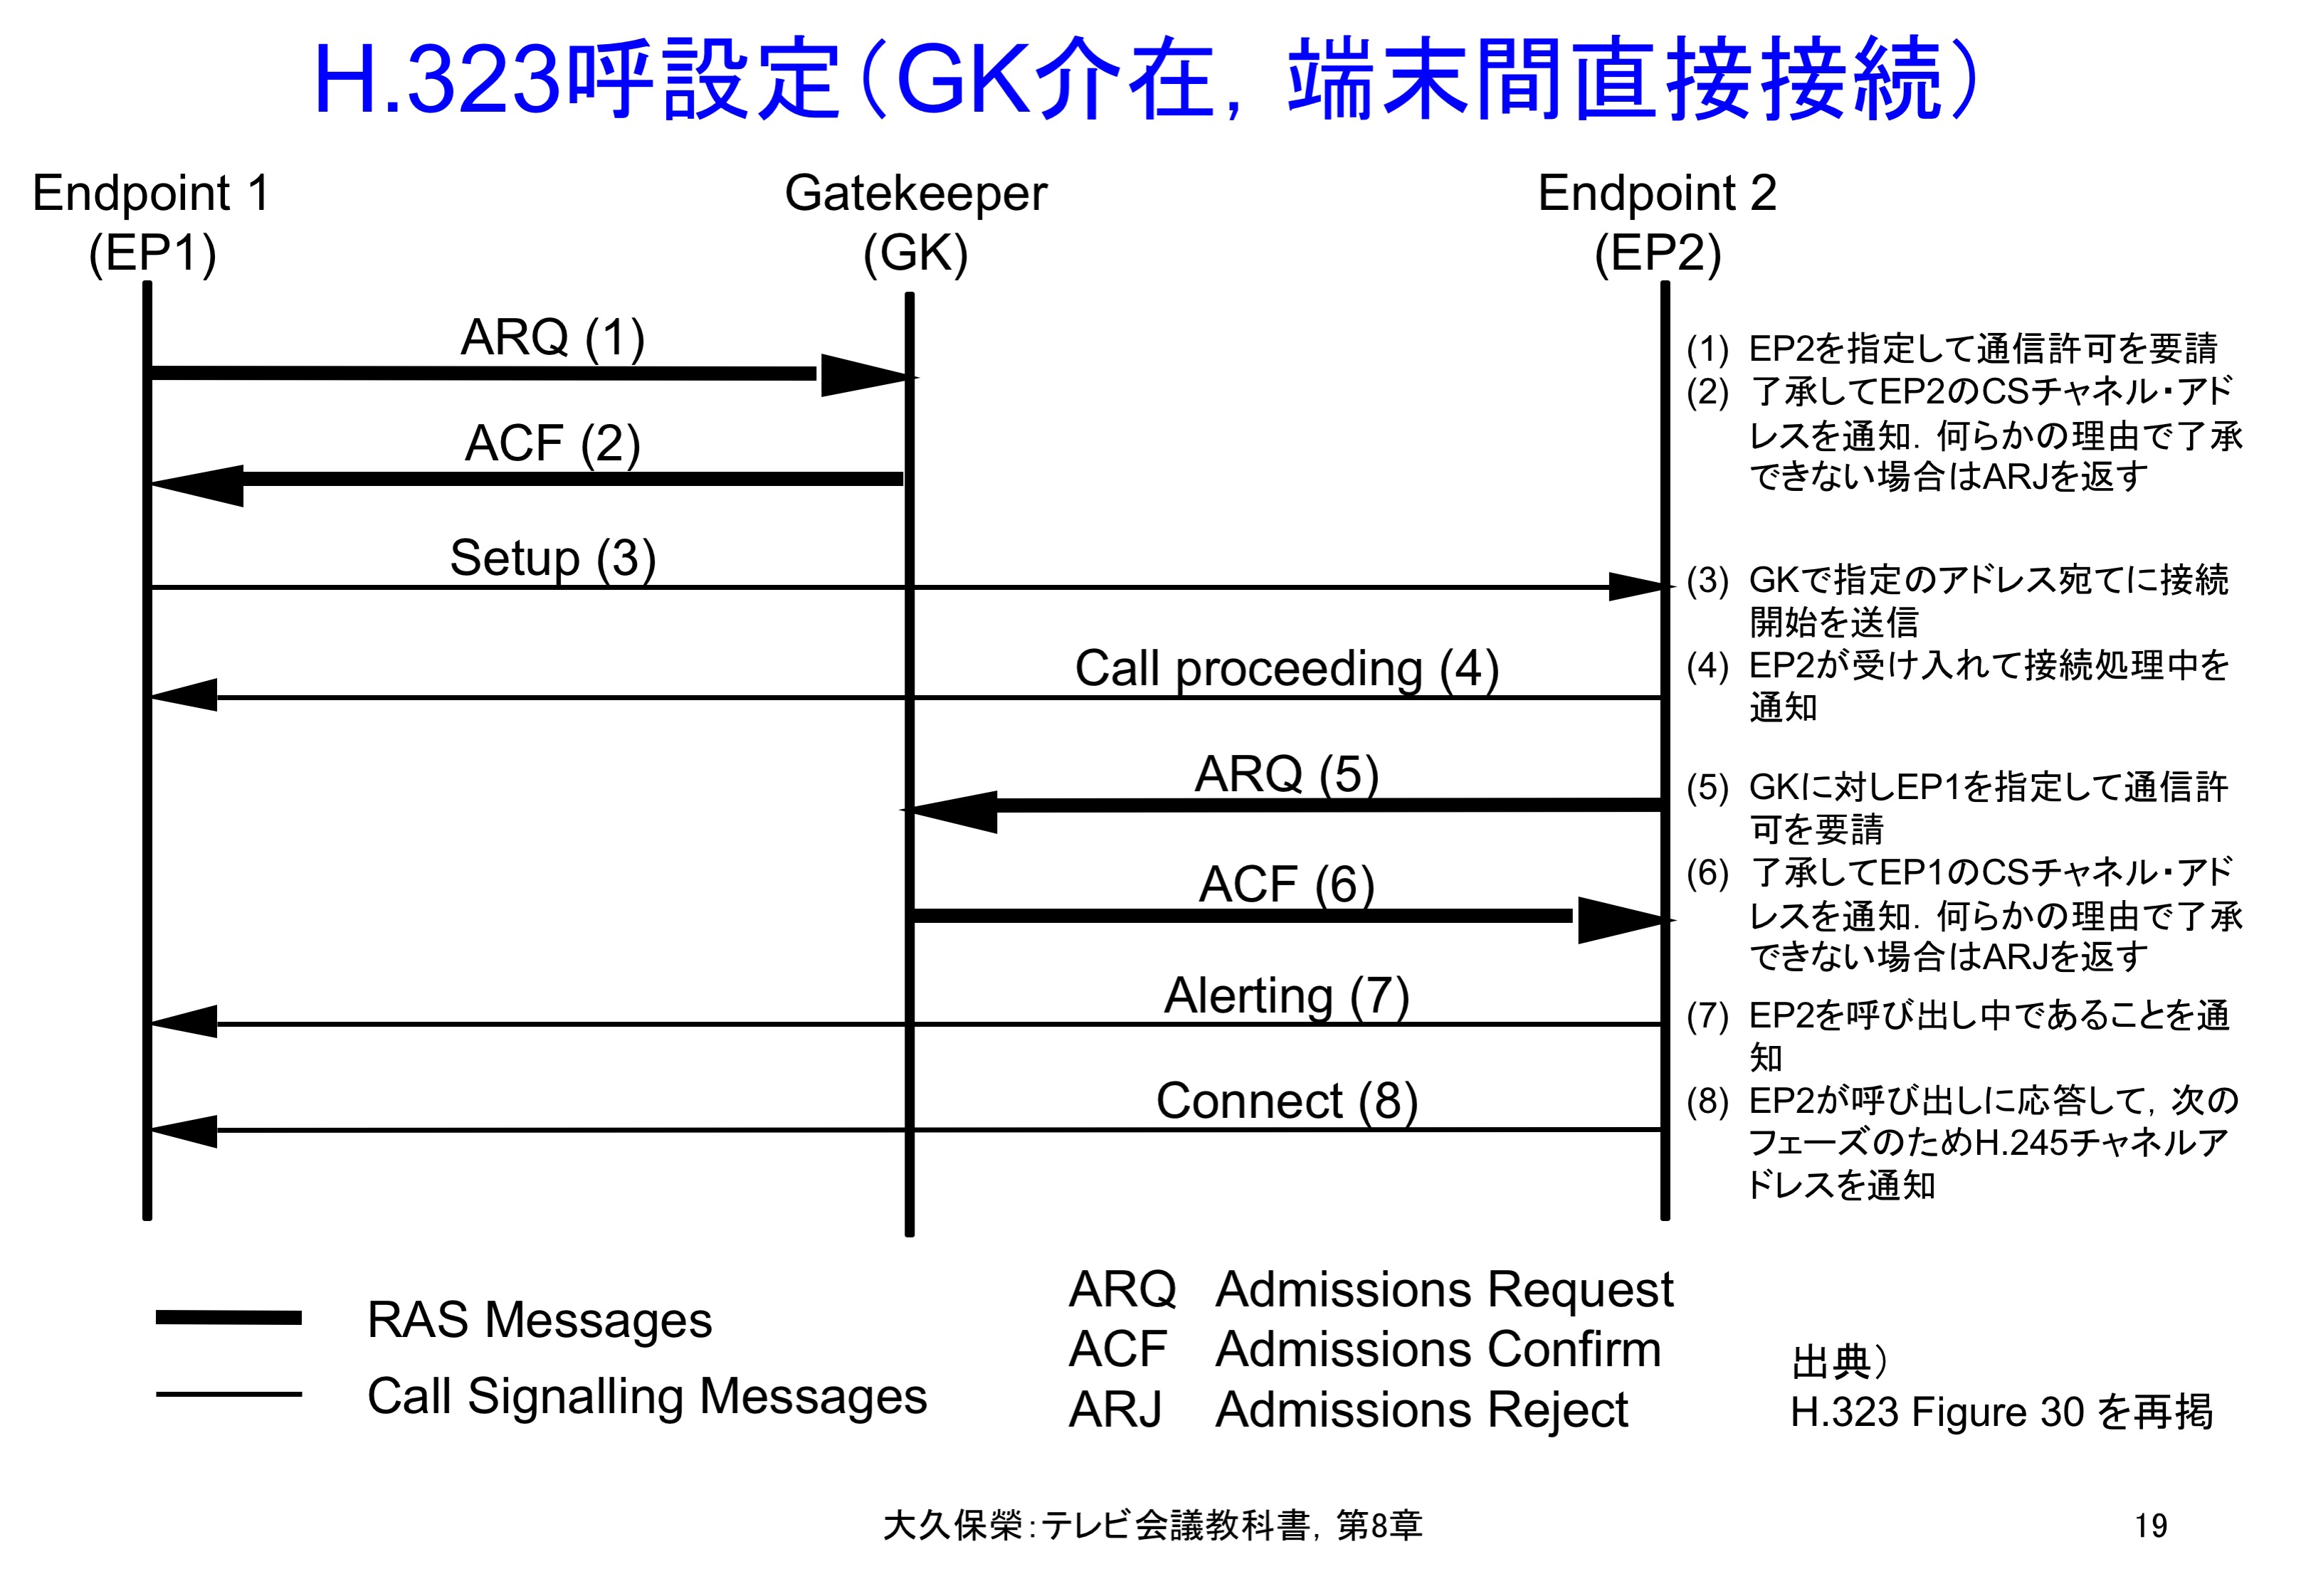 図8-19 H.323呼設定（GK介在，端末間直接接続）